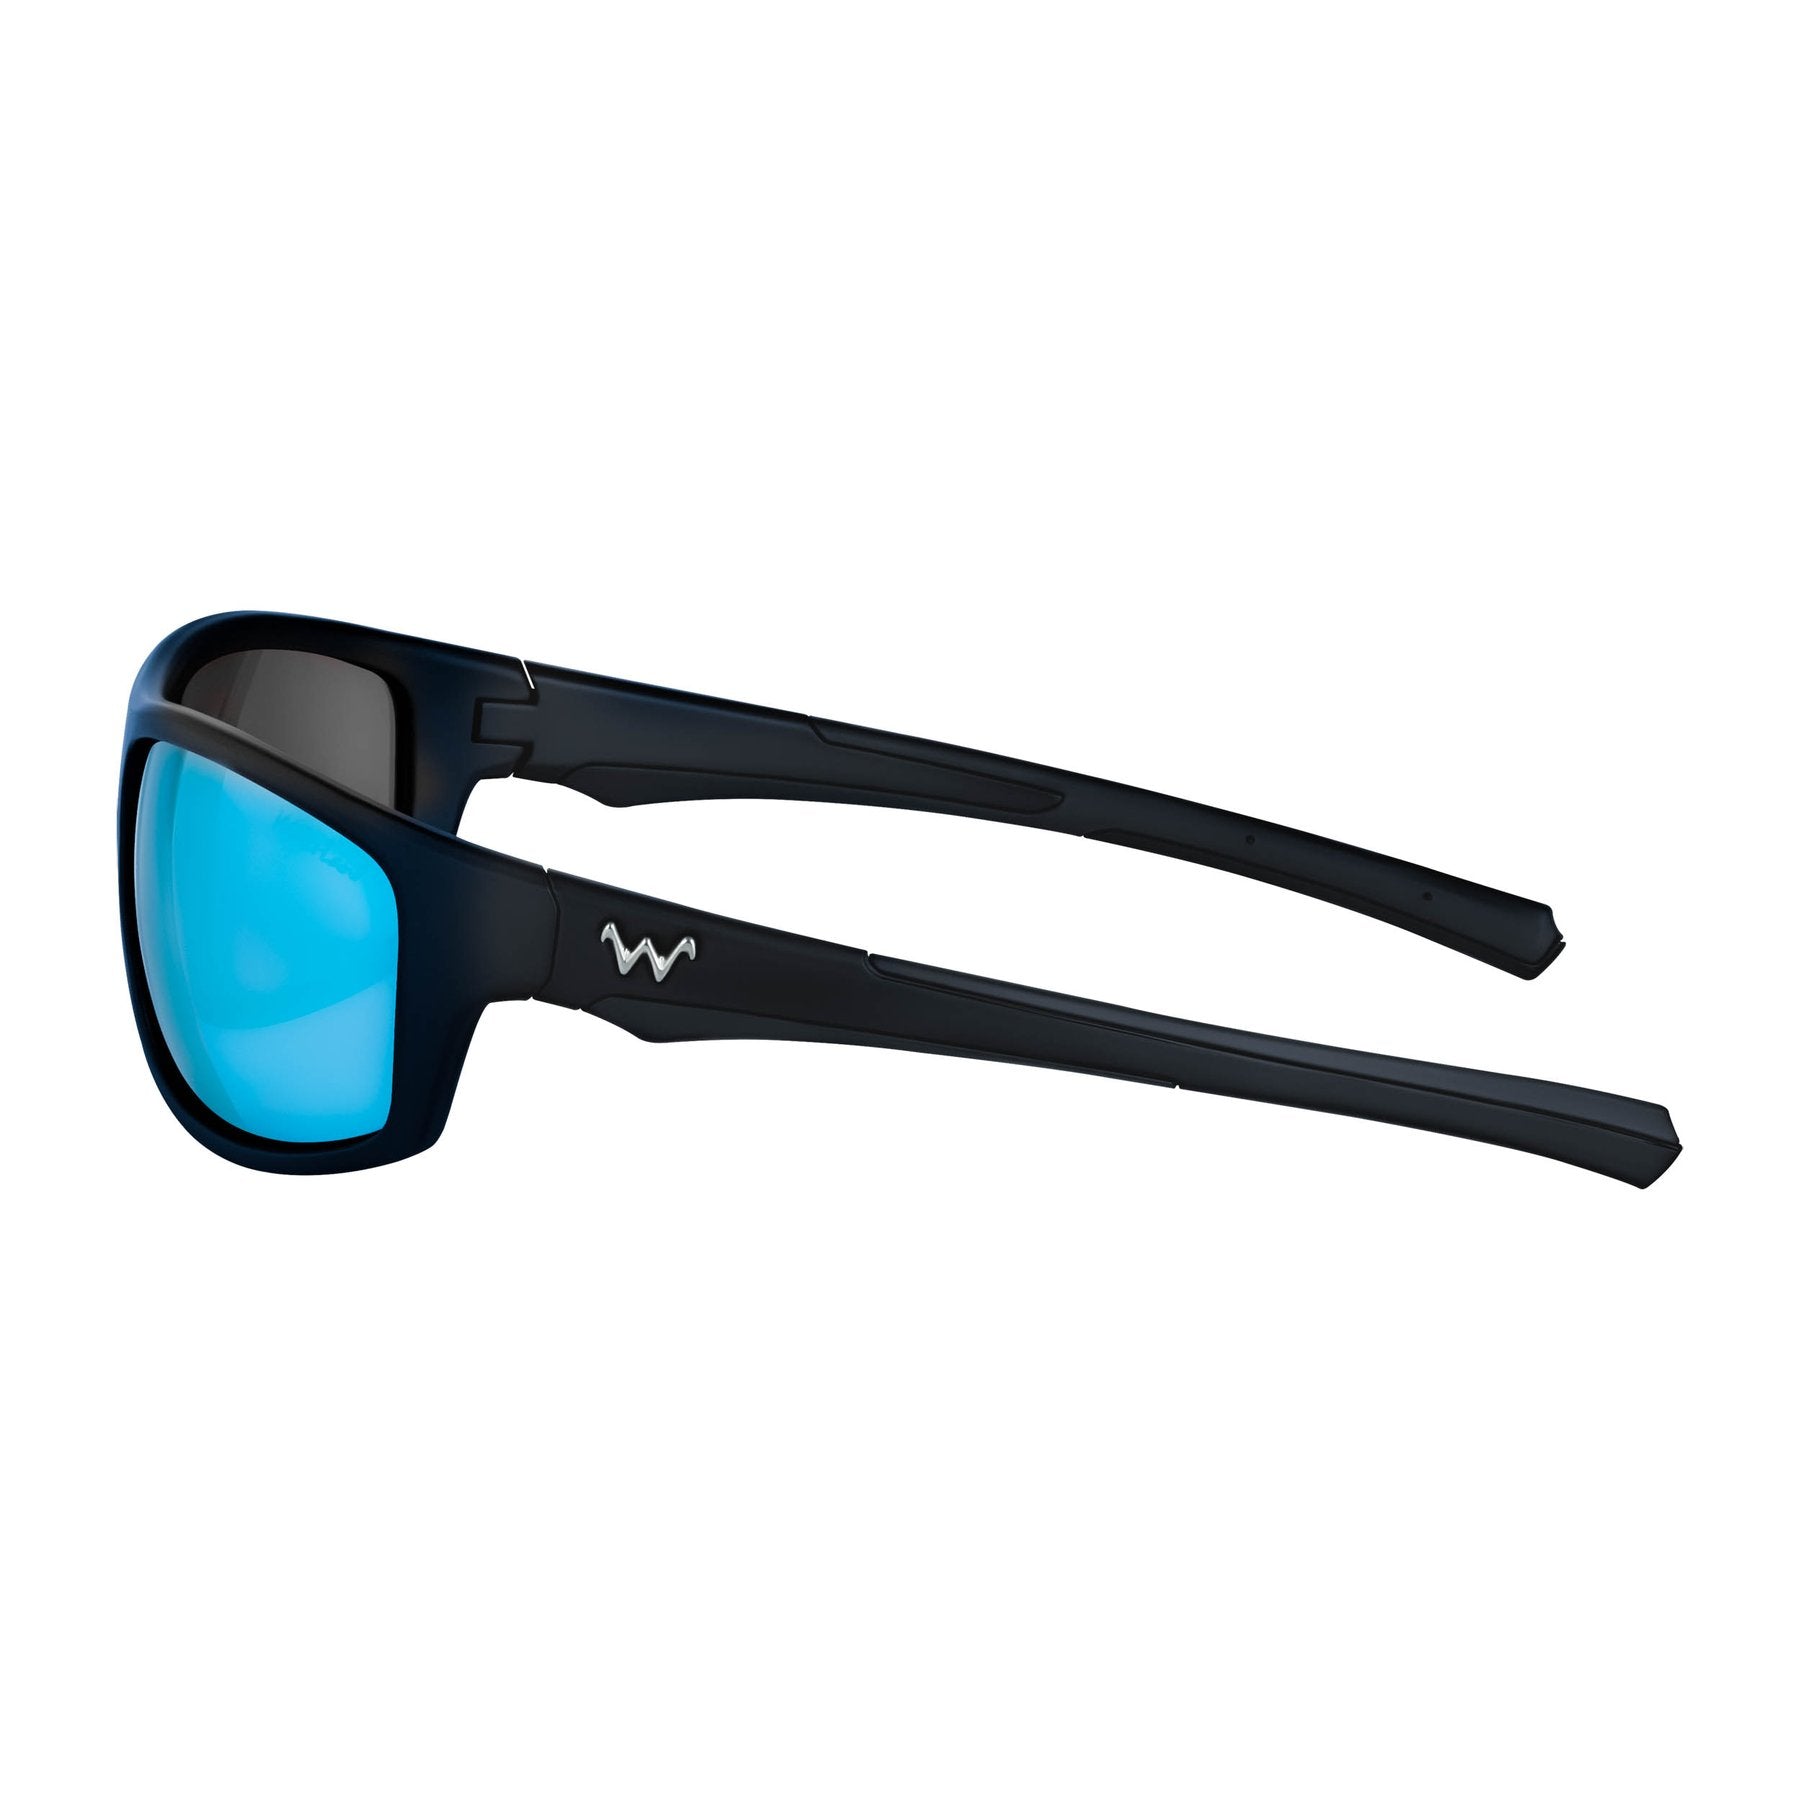 WaterLand Fishing Sunglasses - Milliken Series 